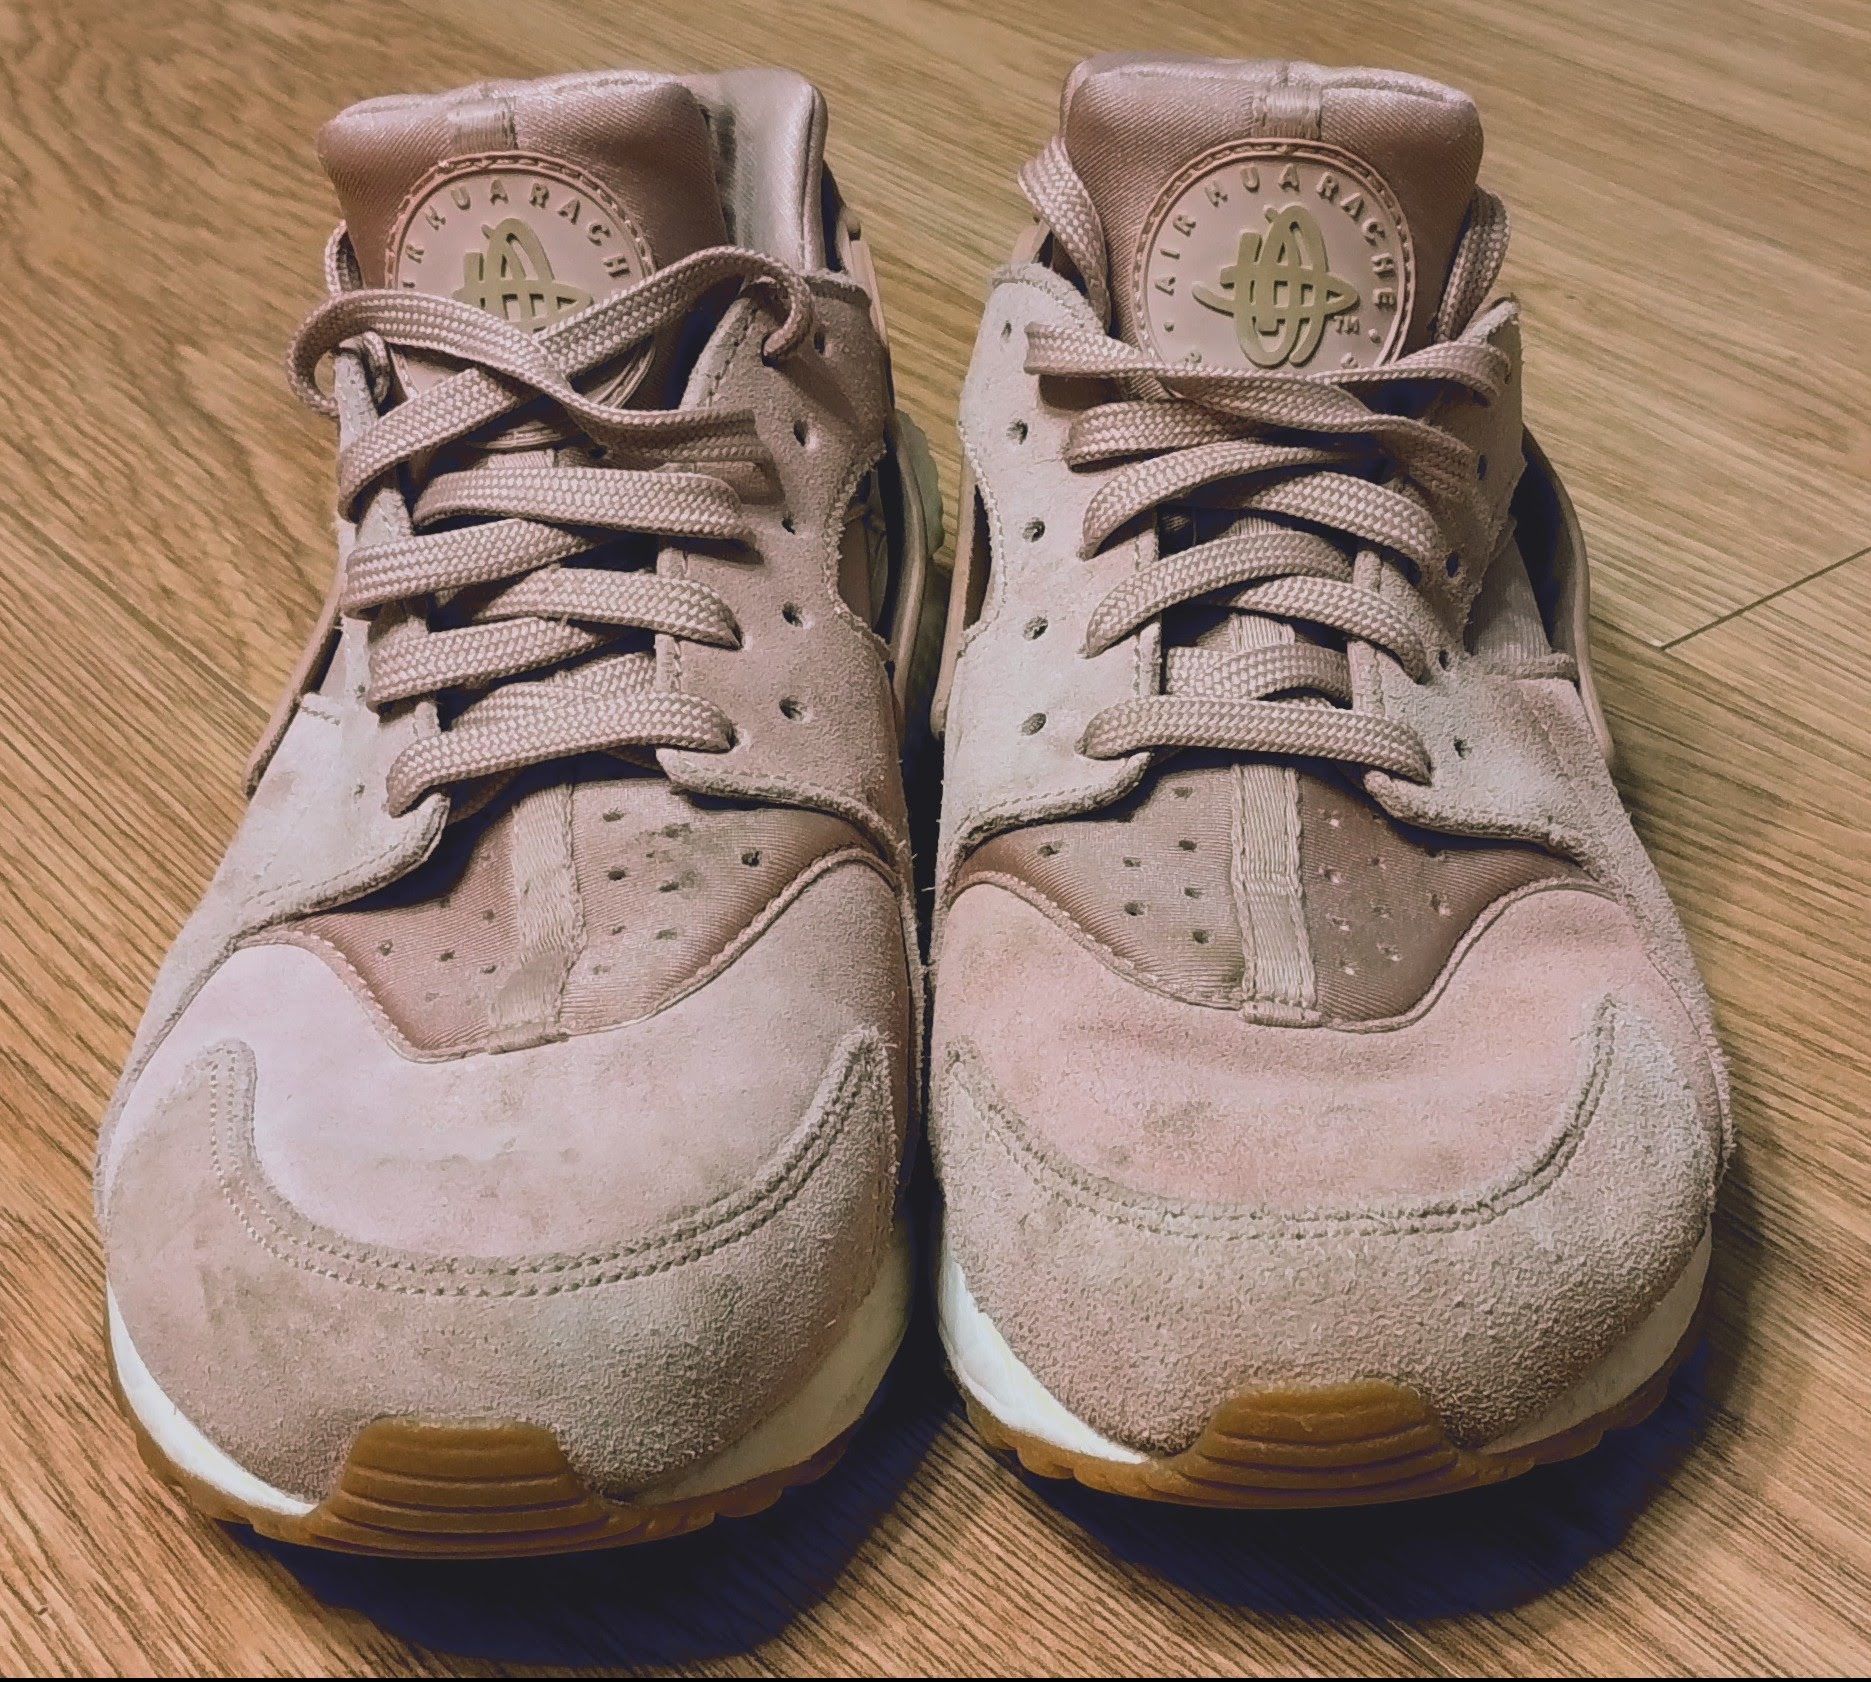 Buty sneakersy Nike Huarache pudrowy róż - rozm 40